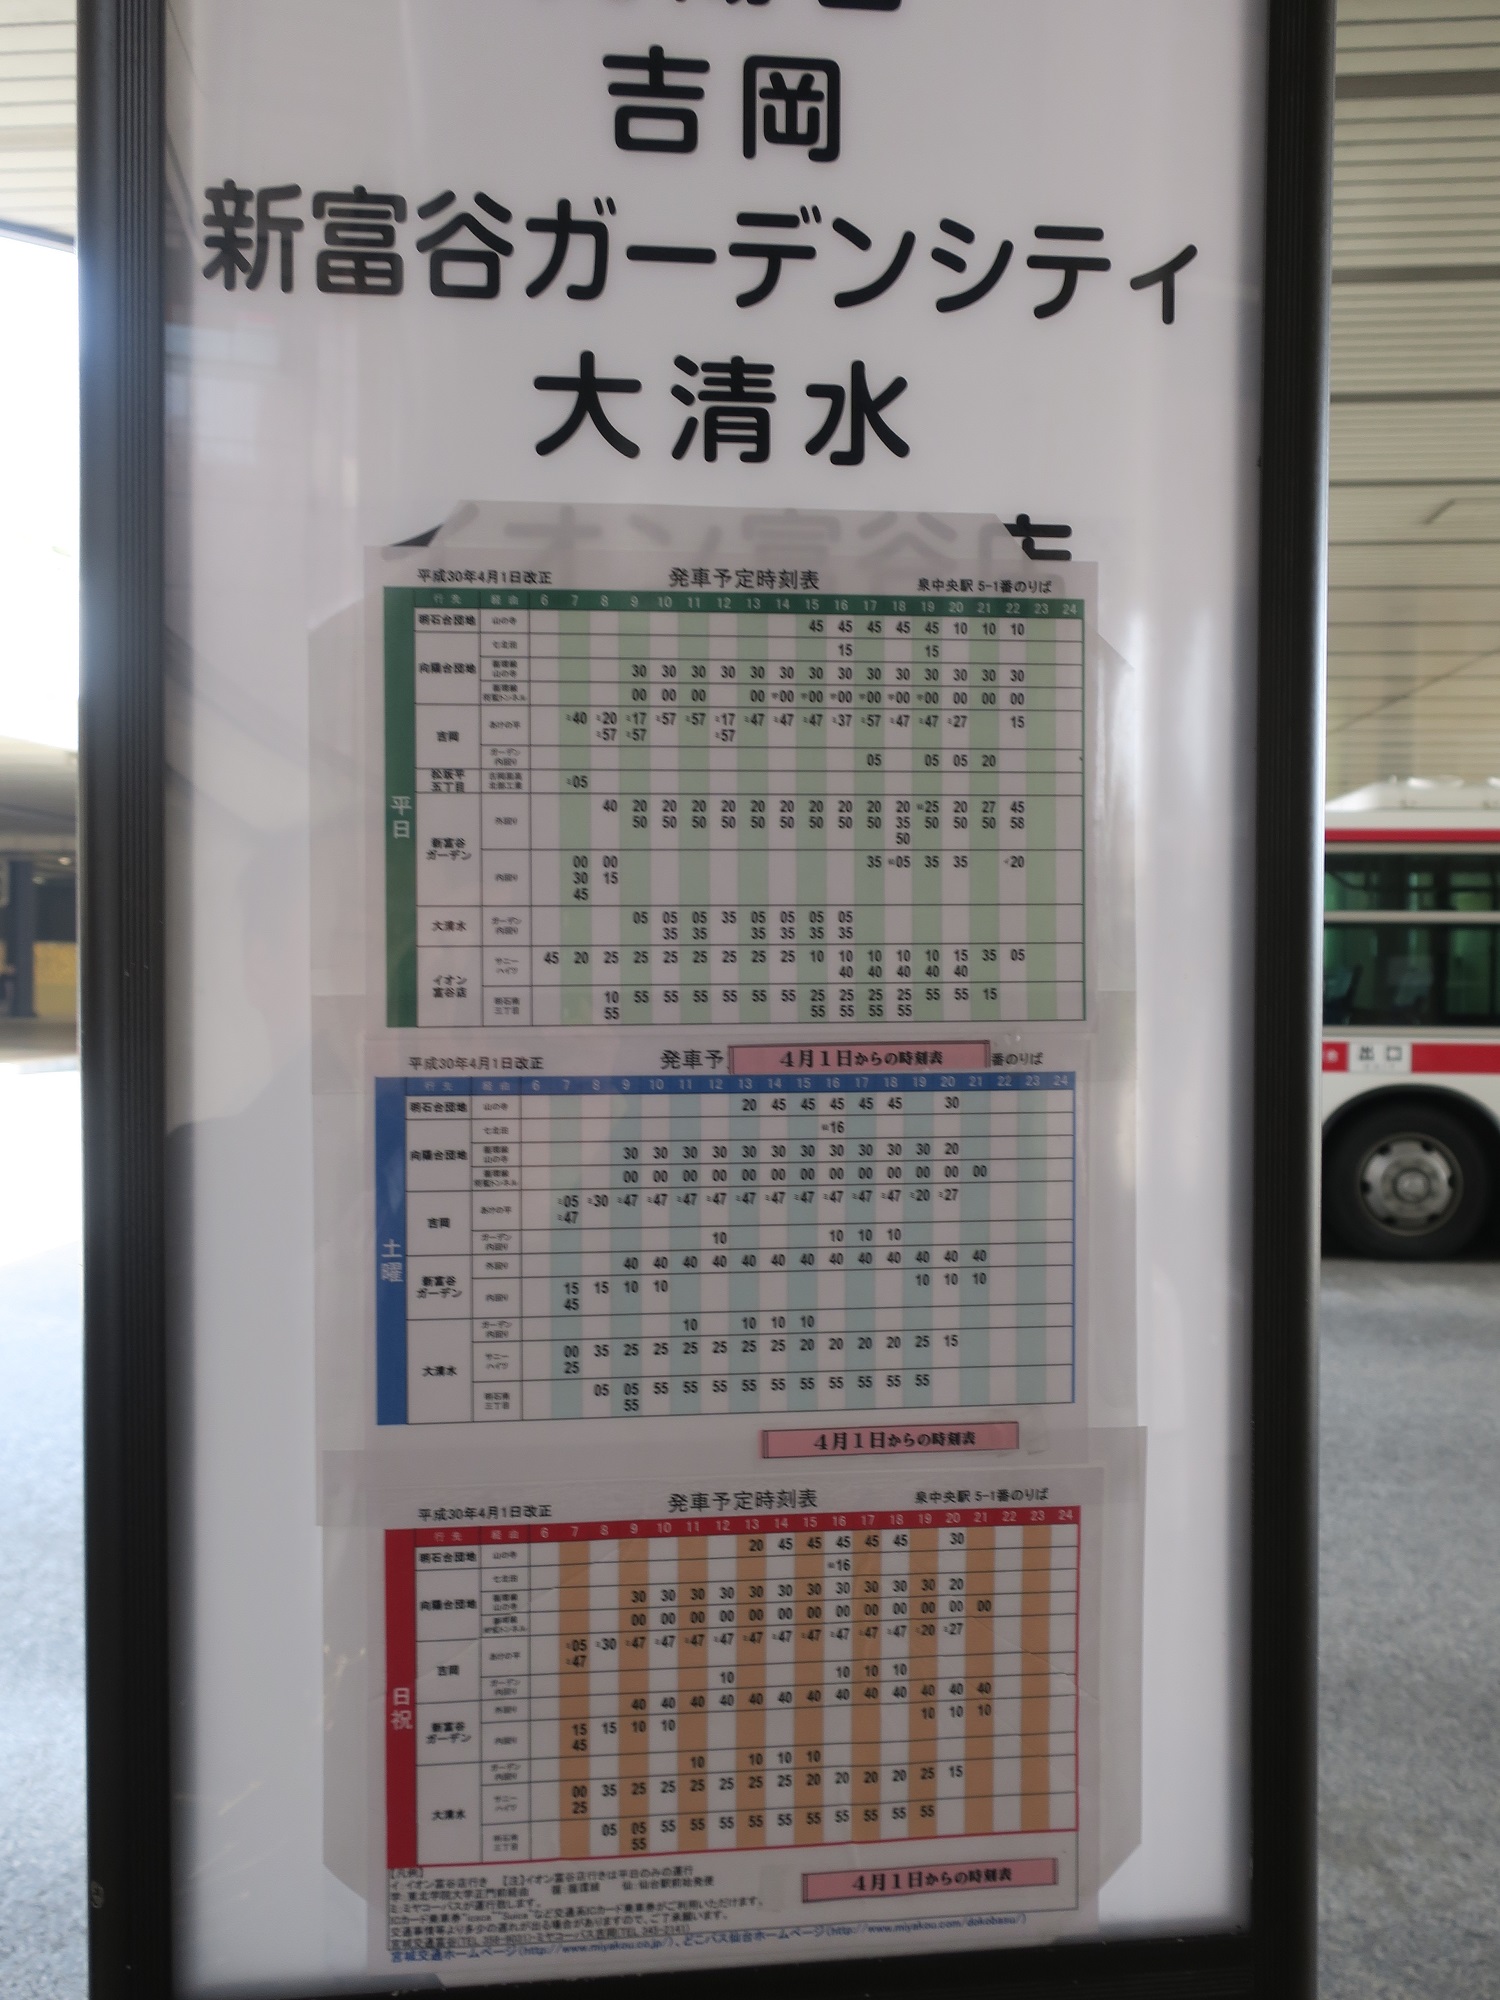 表 時刻 地下鉄 線 南北 仙台市地下鉄南北線の時刻表